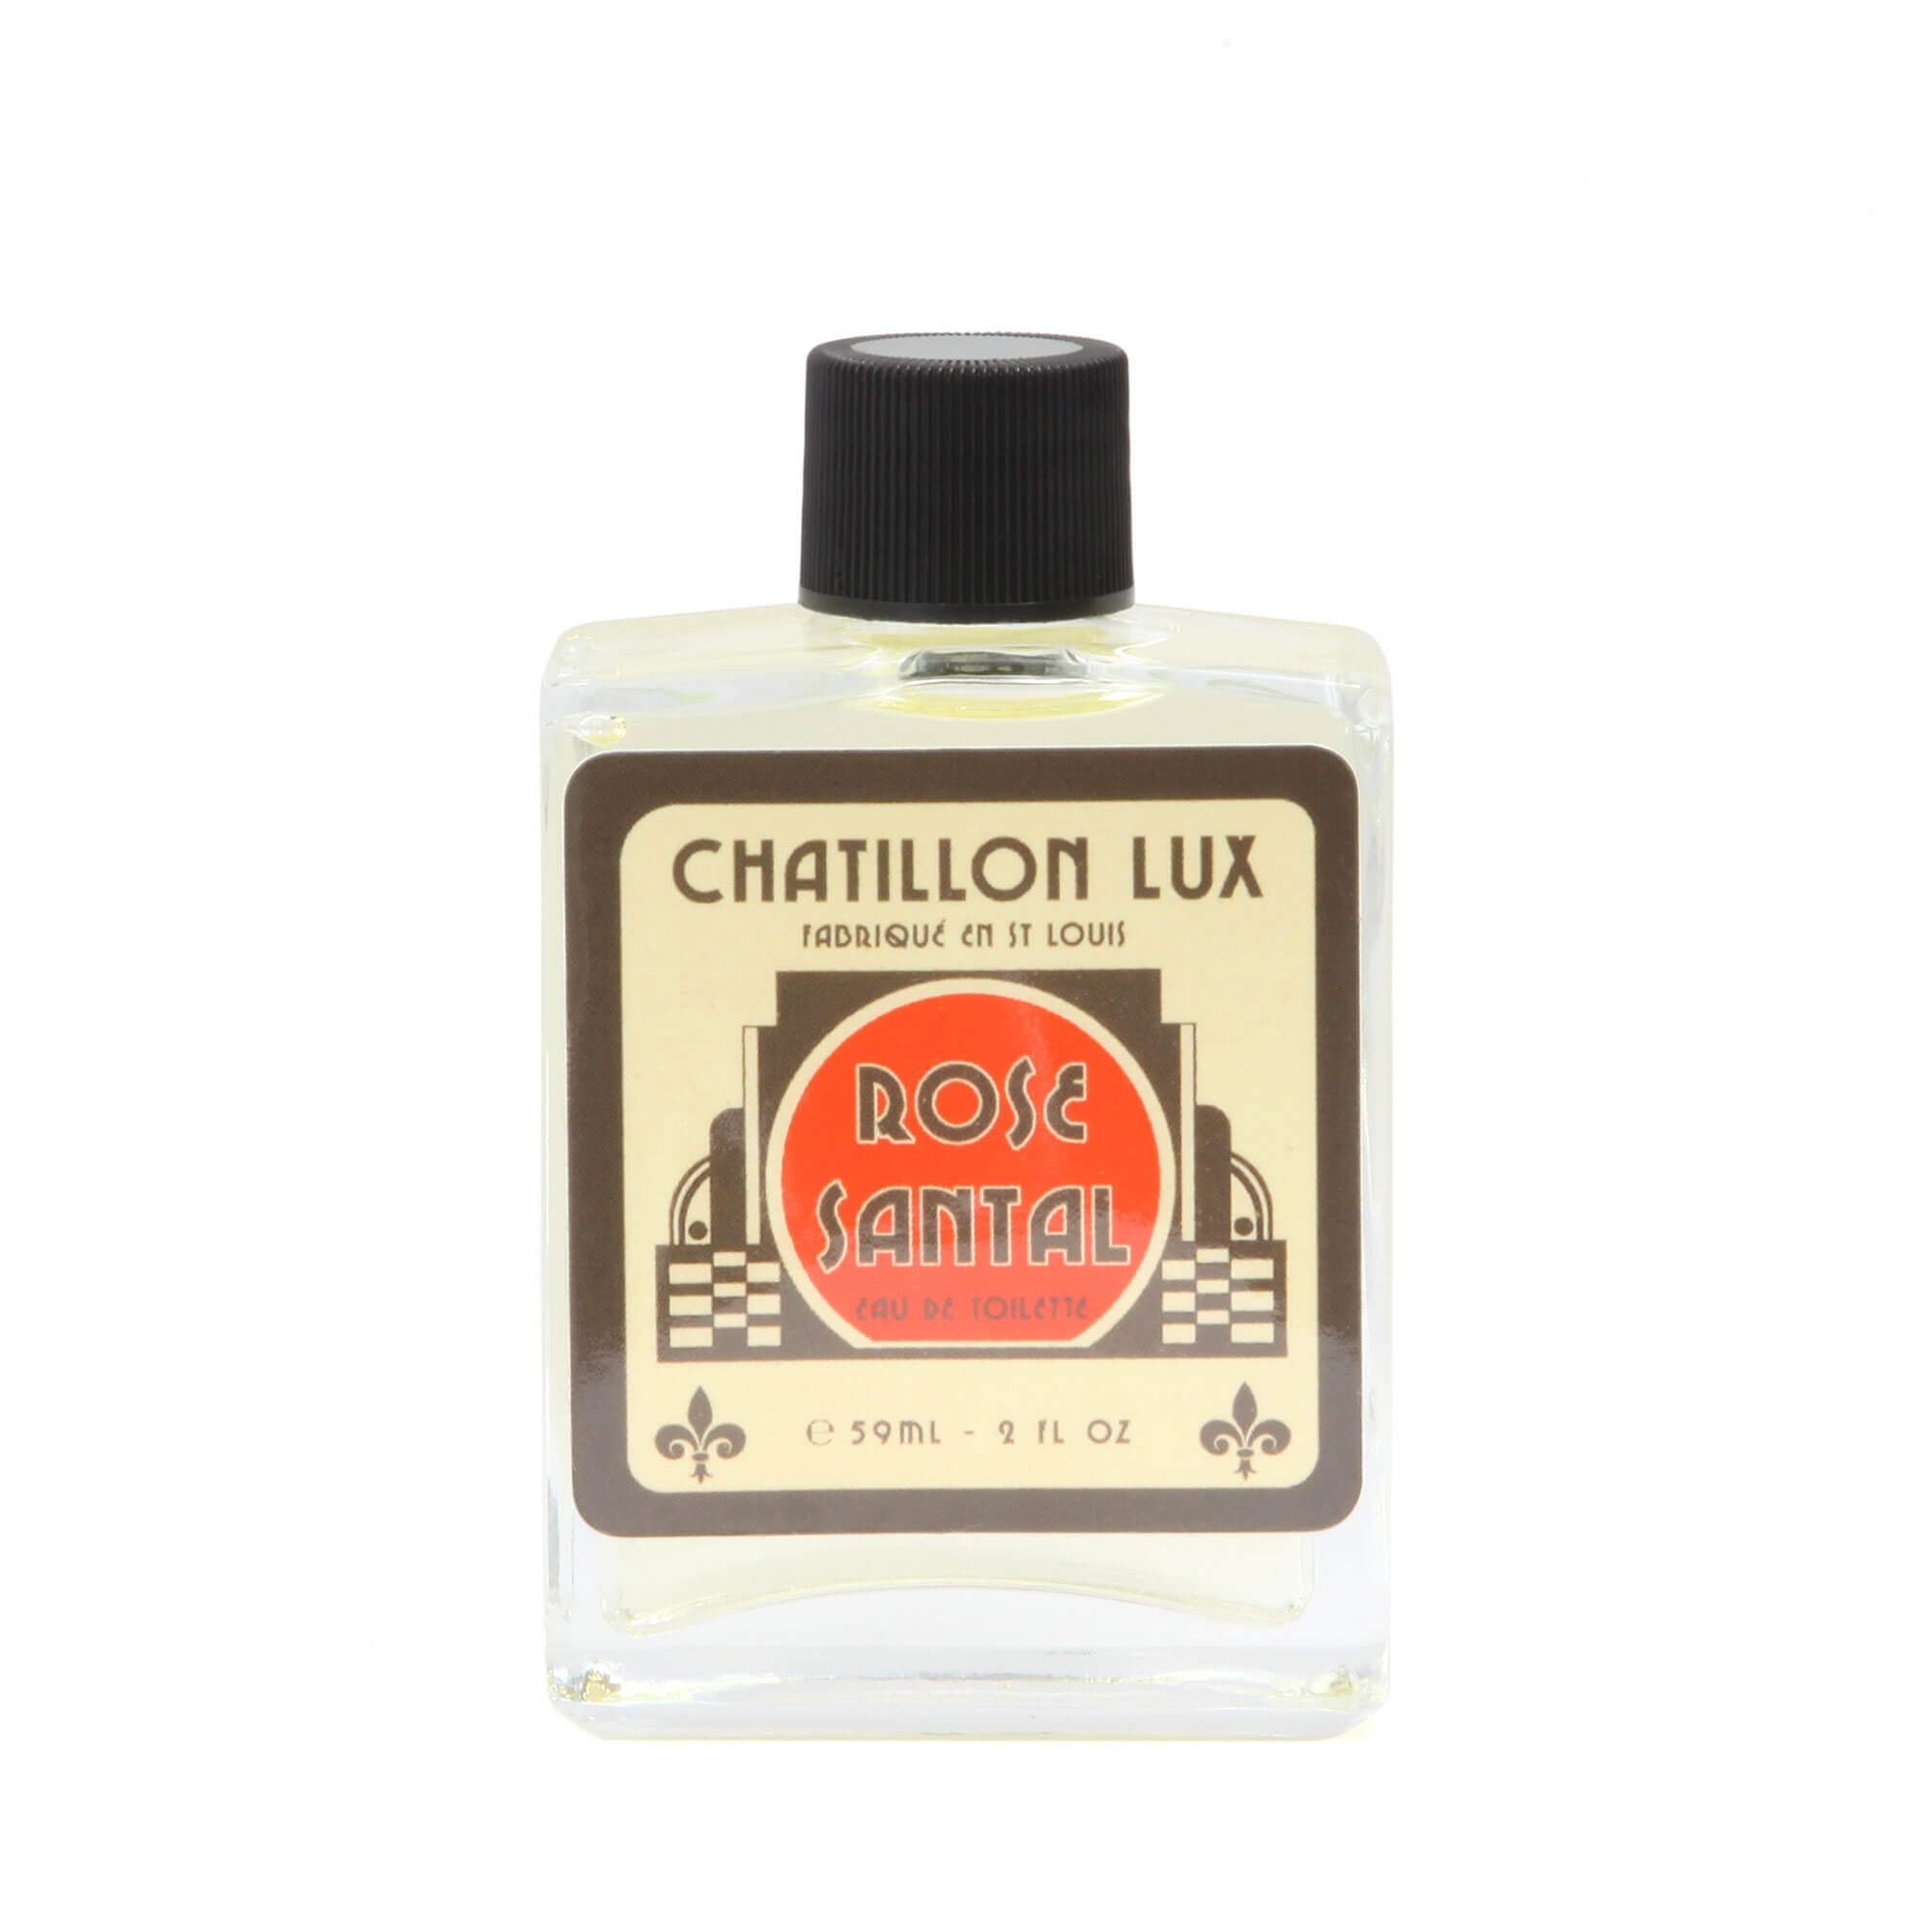 Chatillon Lux Rose Santal Eau De Toilette